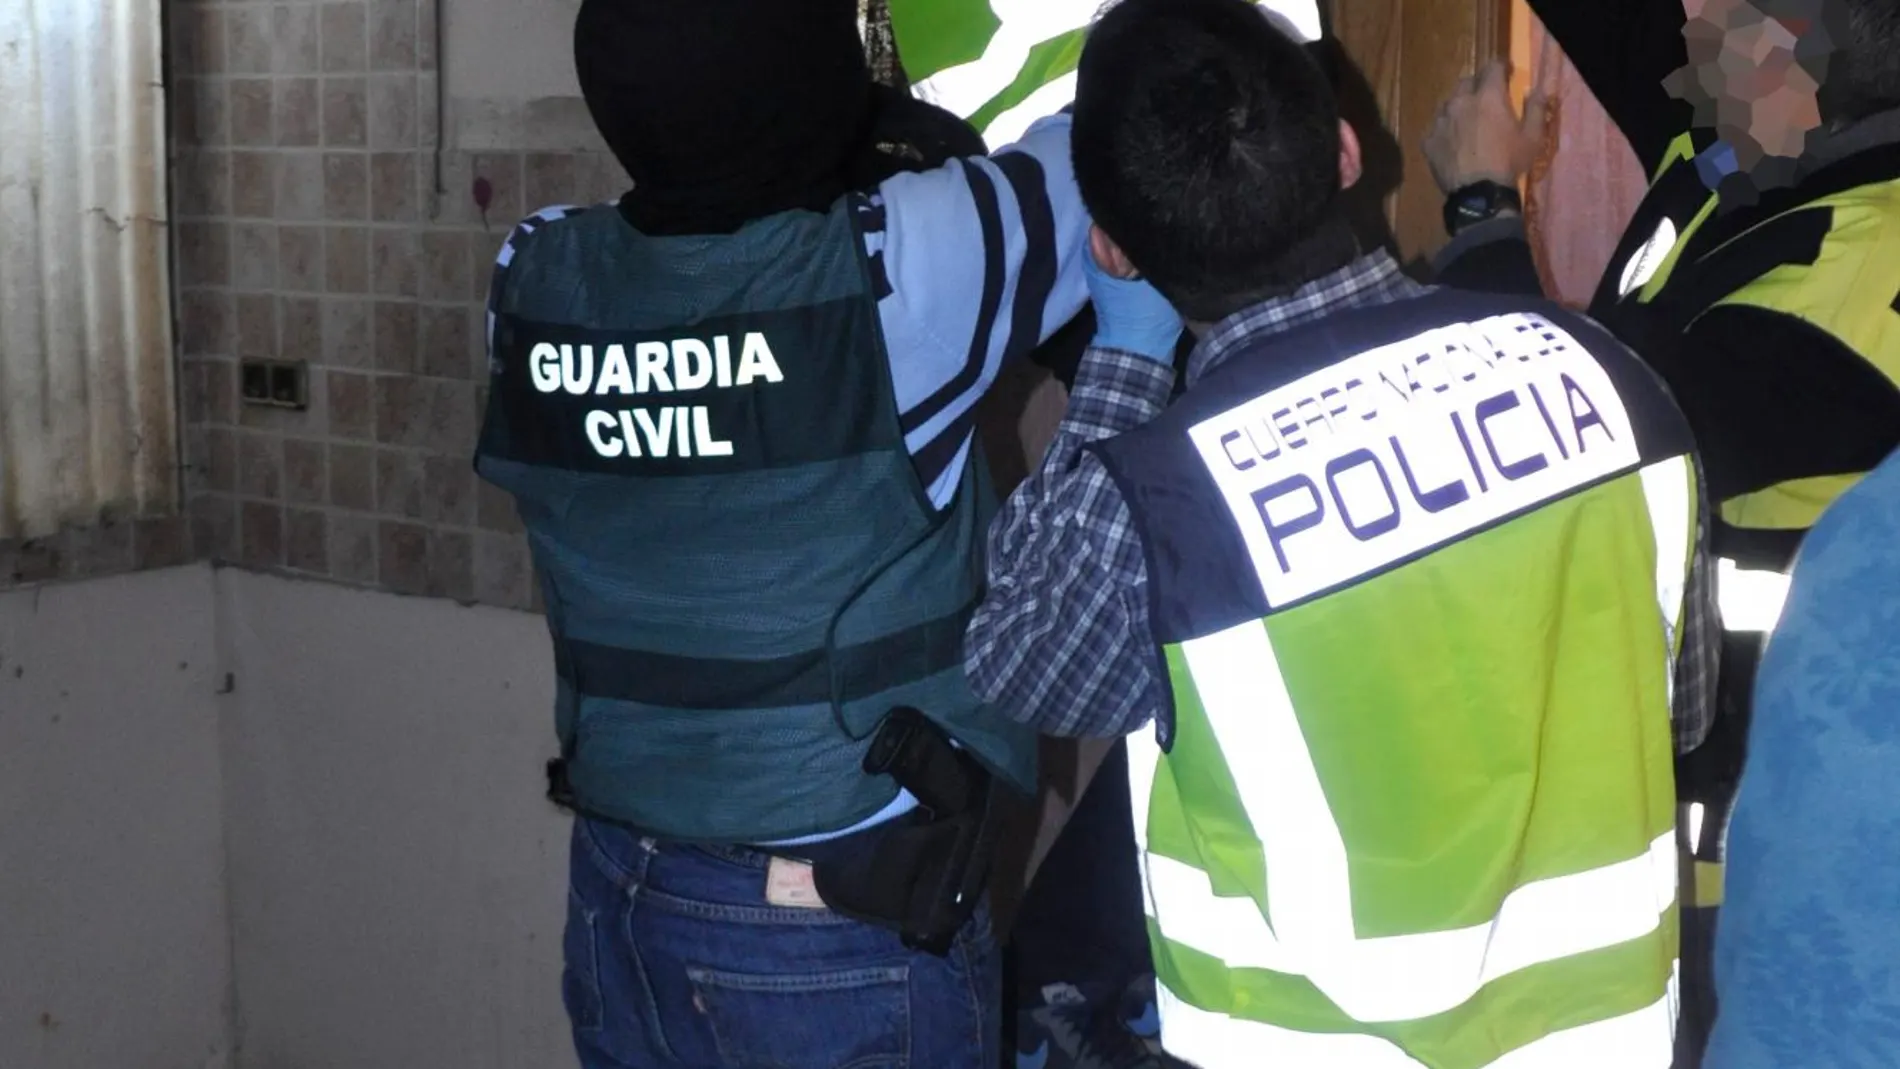 Cae una banda criminal que atracaba comercios a punta de pistola en Murcia